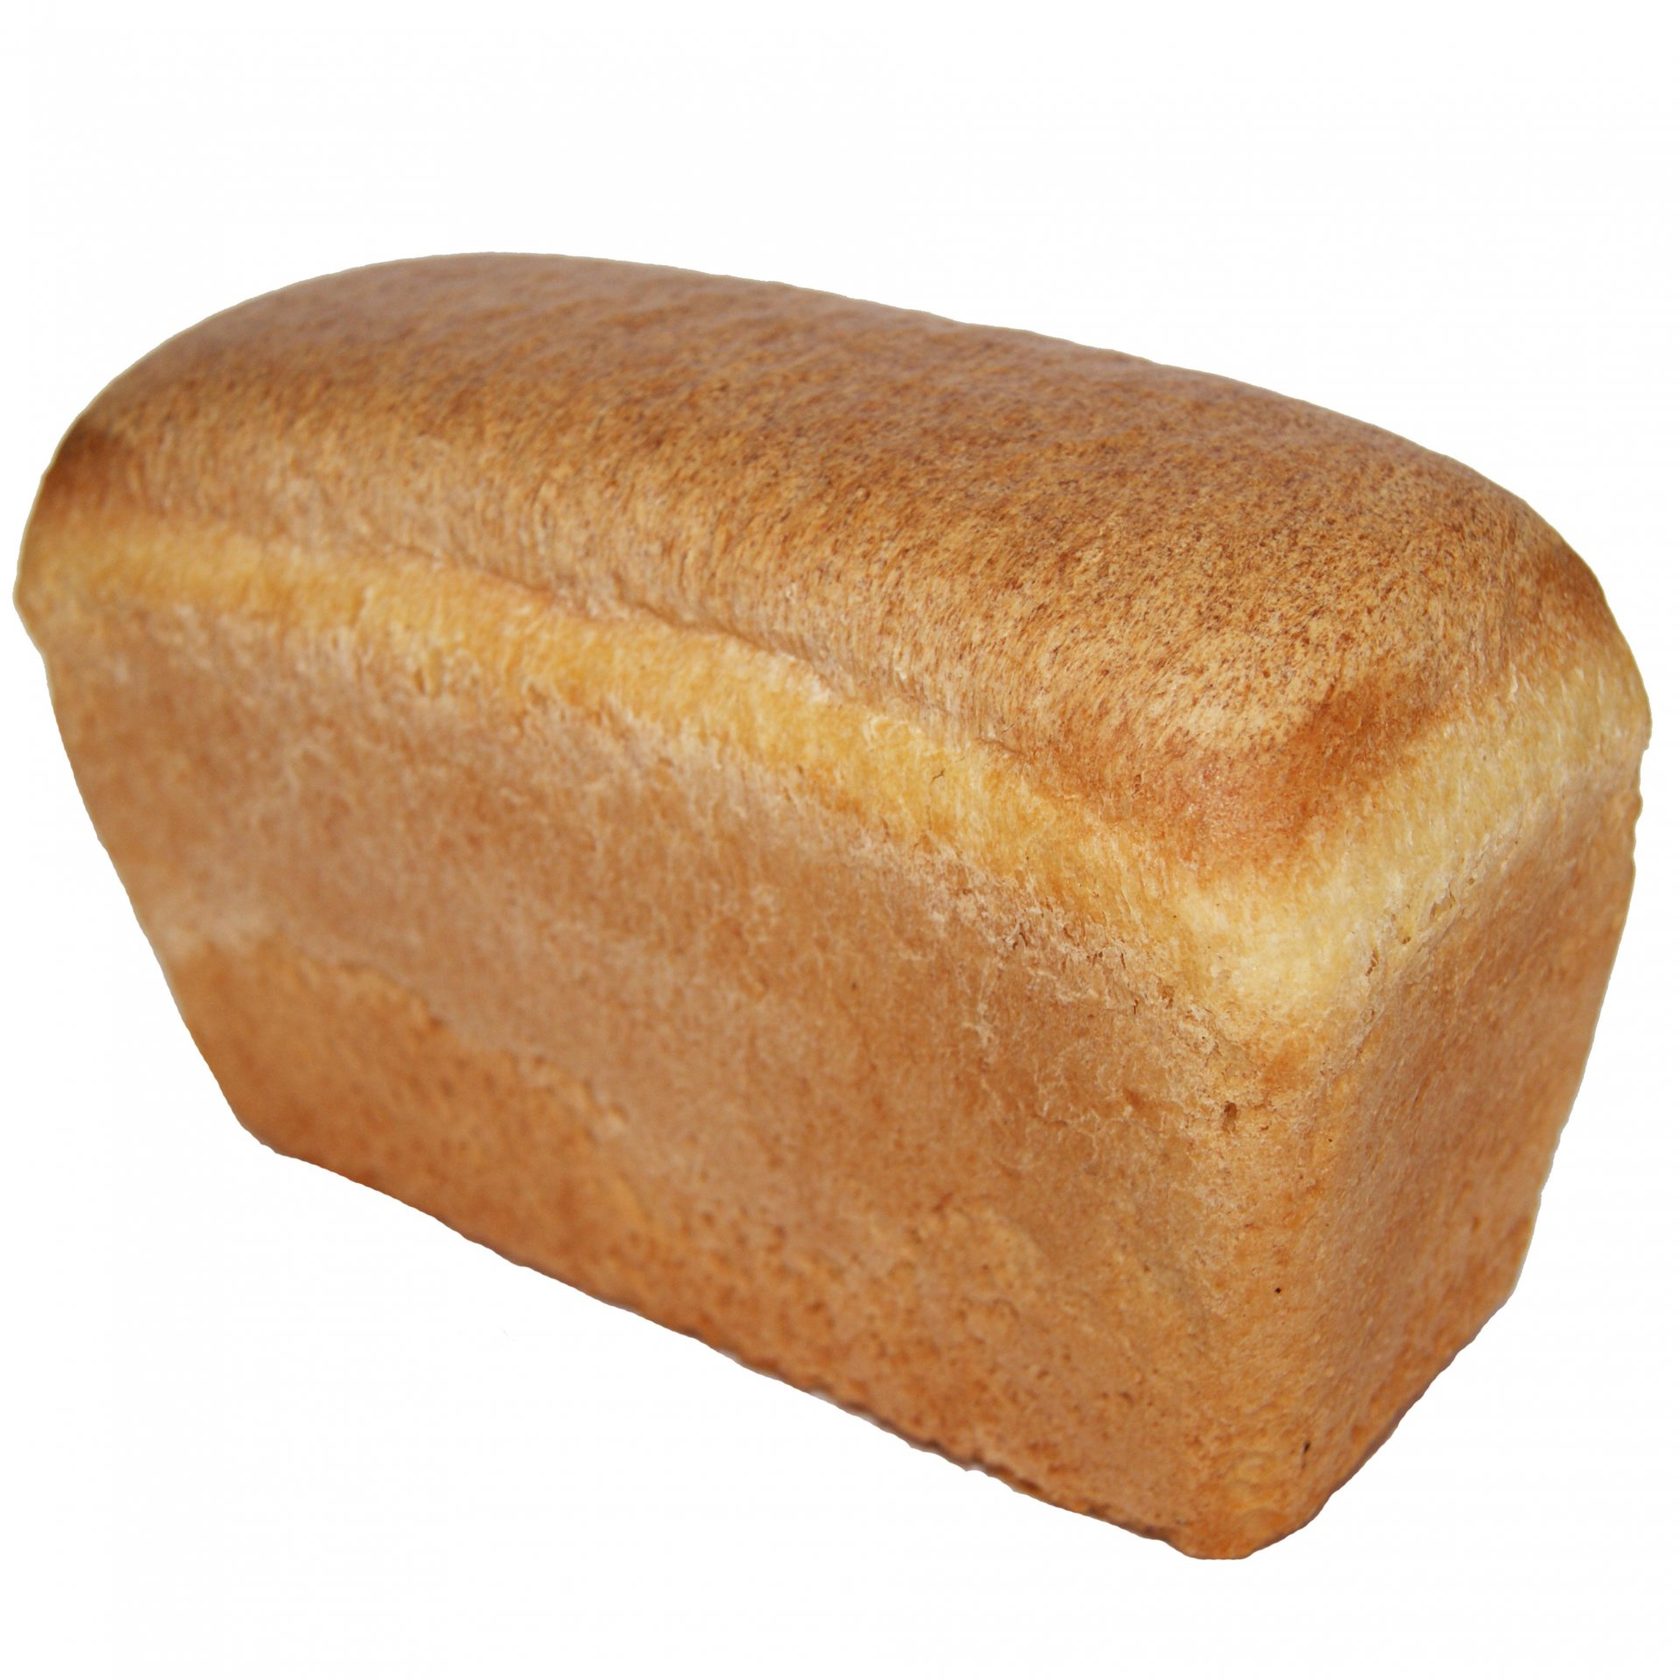 Где Купить Хлеб В Челябинске